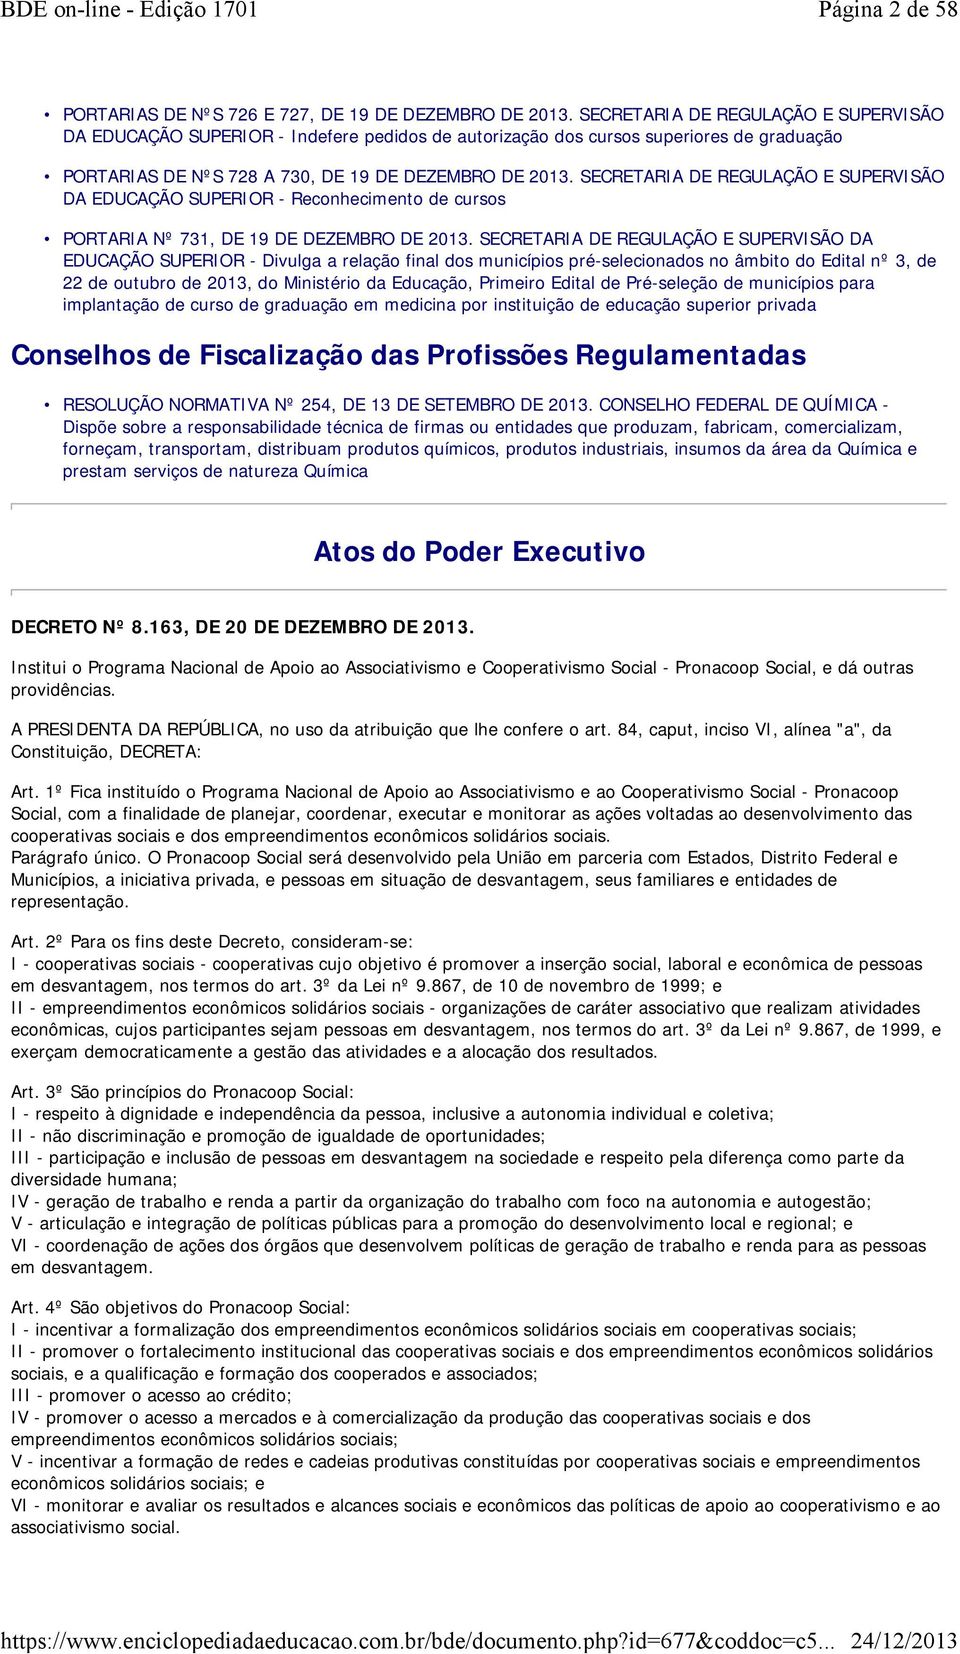 SECRETARIA DE REGULAÇÃO E SUPERVISÃO DA EDUCAÇÃO SUPERIOR - Reconhecimento de cursos PORTARIA Nº 731, DE 19 DE DEZEMBRO DE 2013.